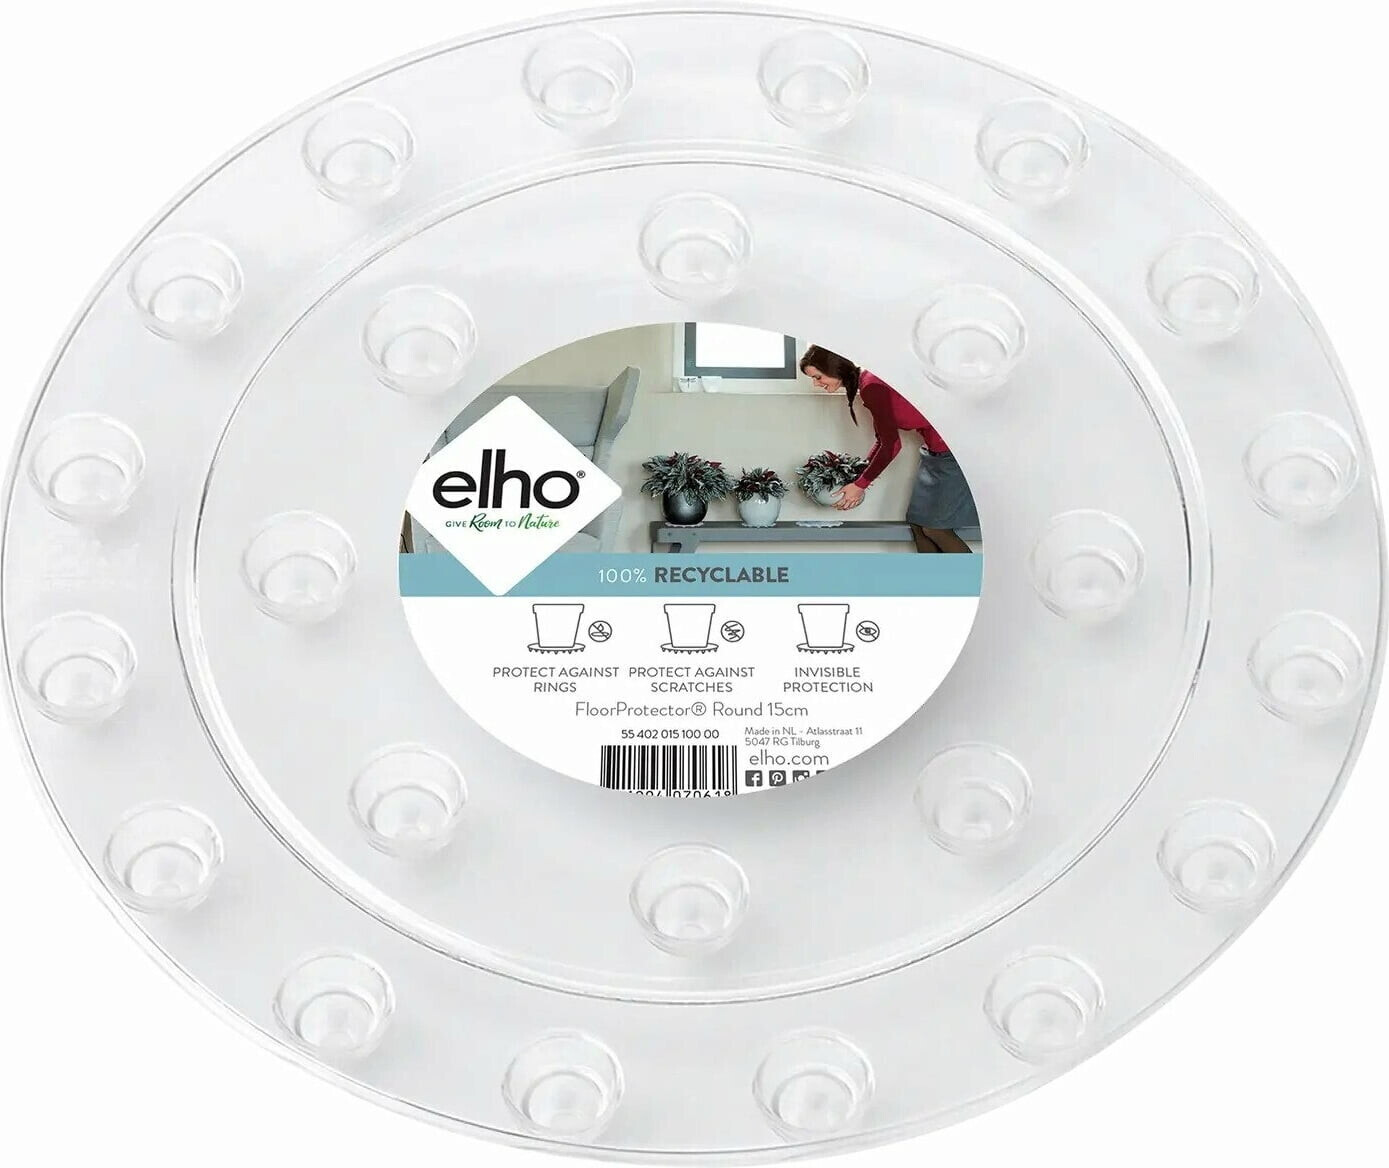 Elho floorprotector rund 21cm (5540202010000) ab 6,19 € | Preisvergleich  bei